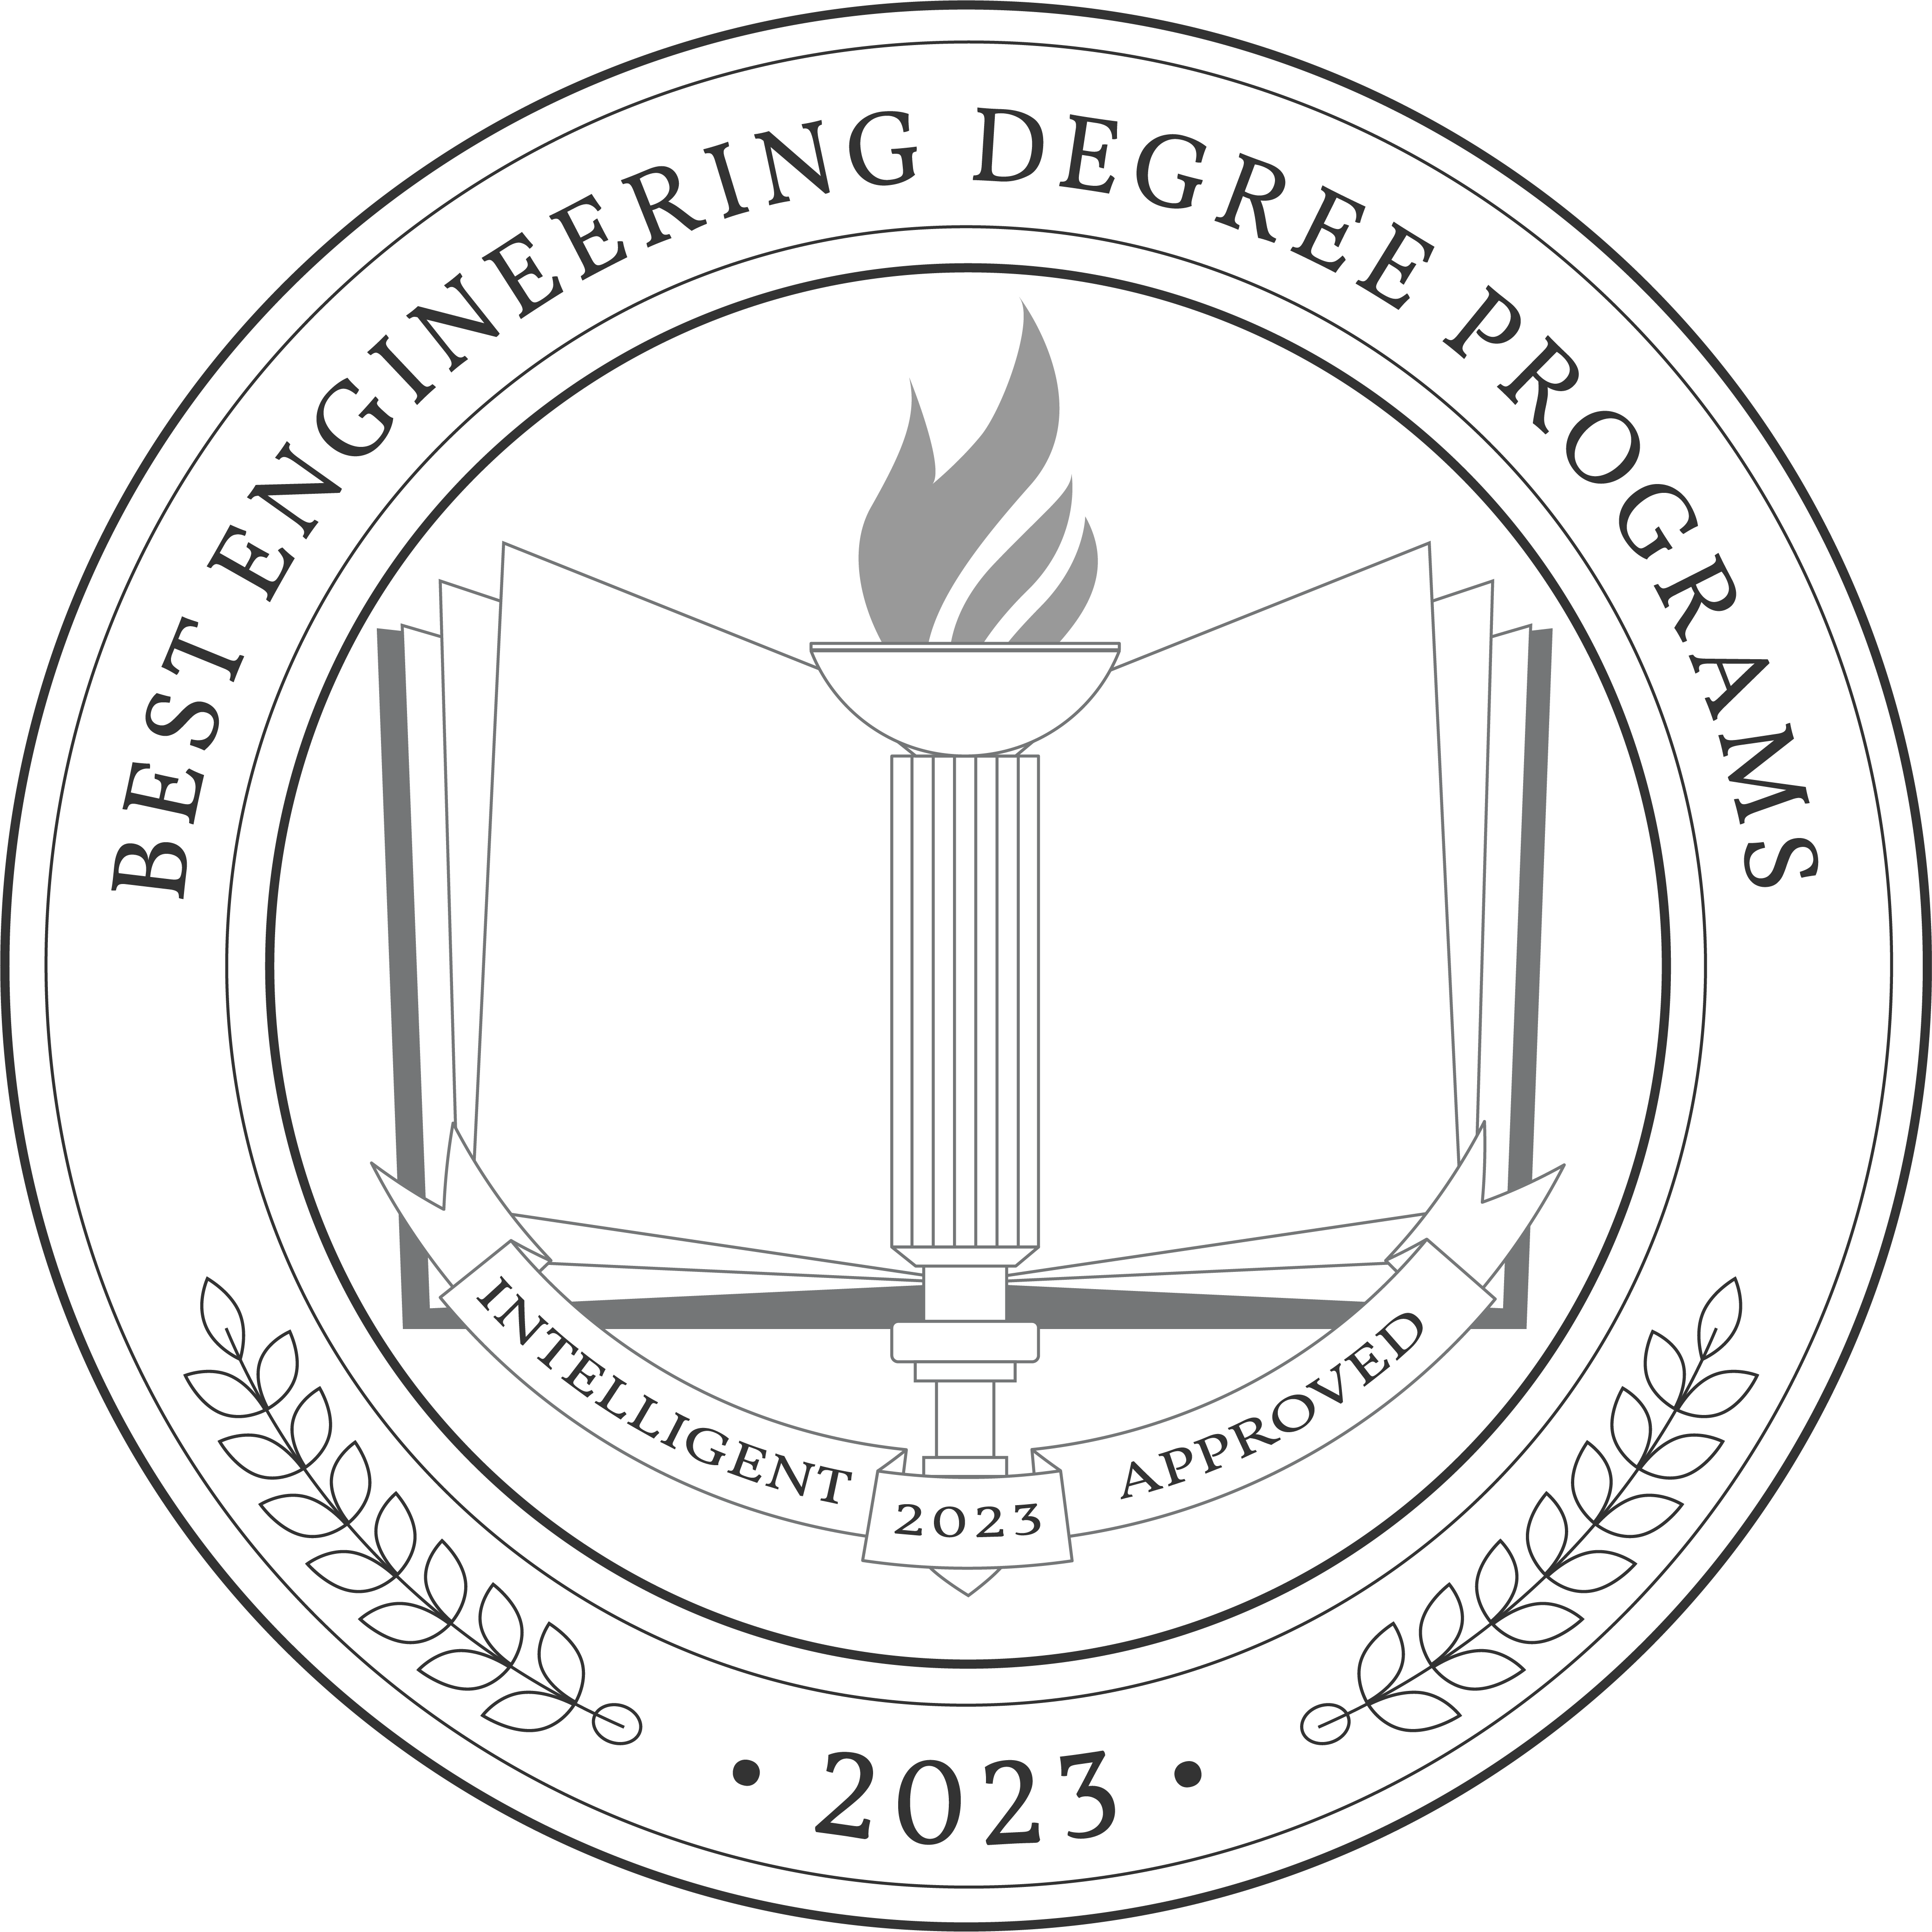 Best Engineering Degree Programs 2023